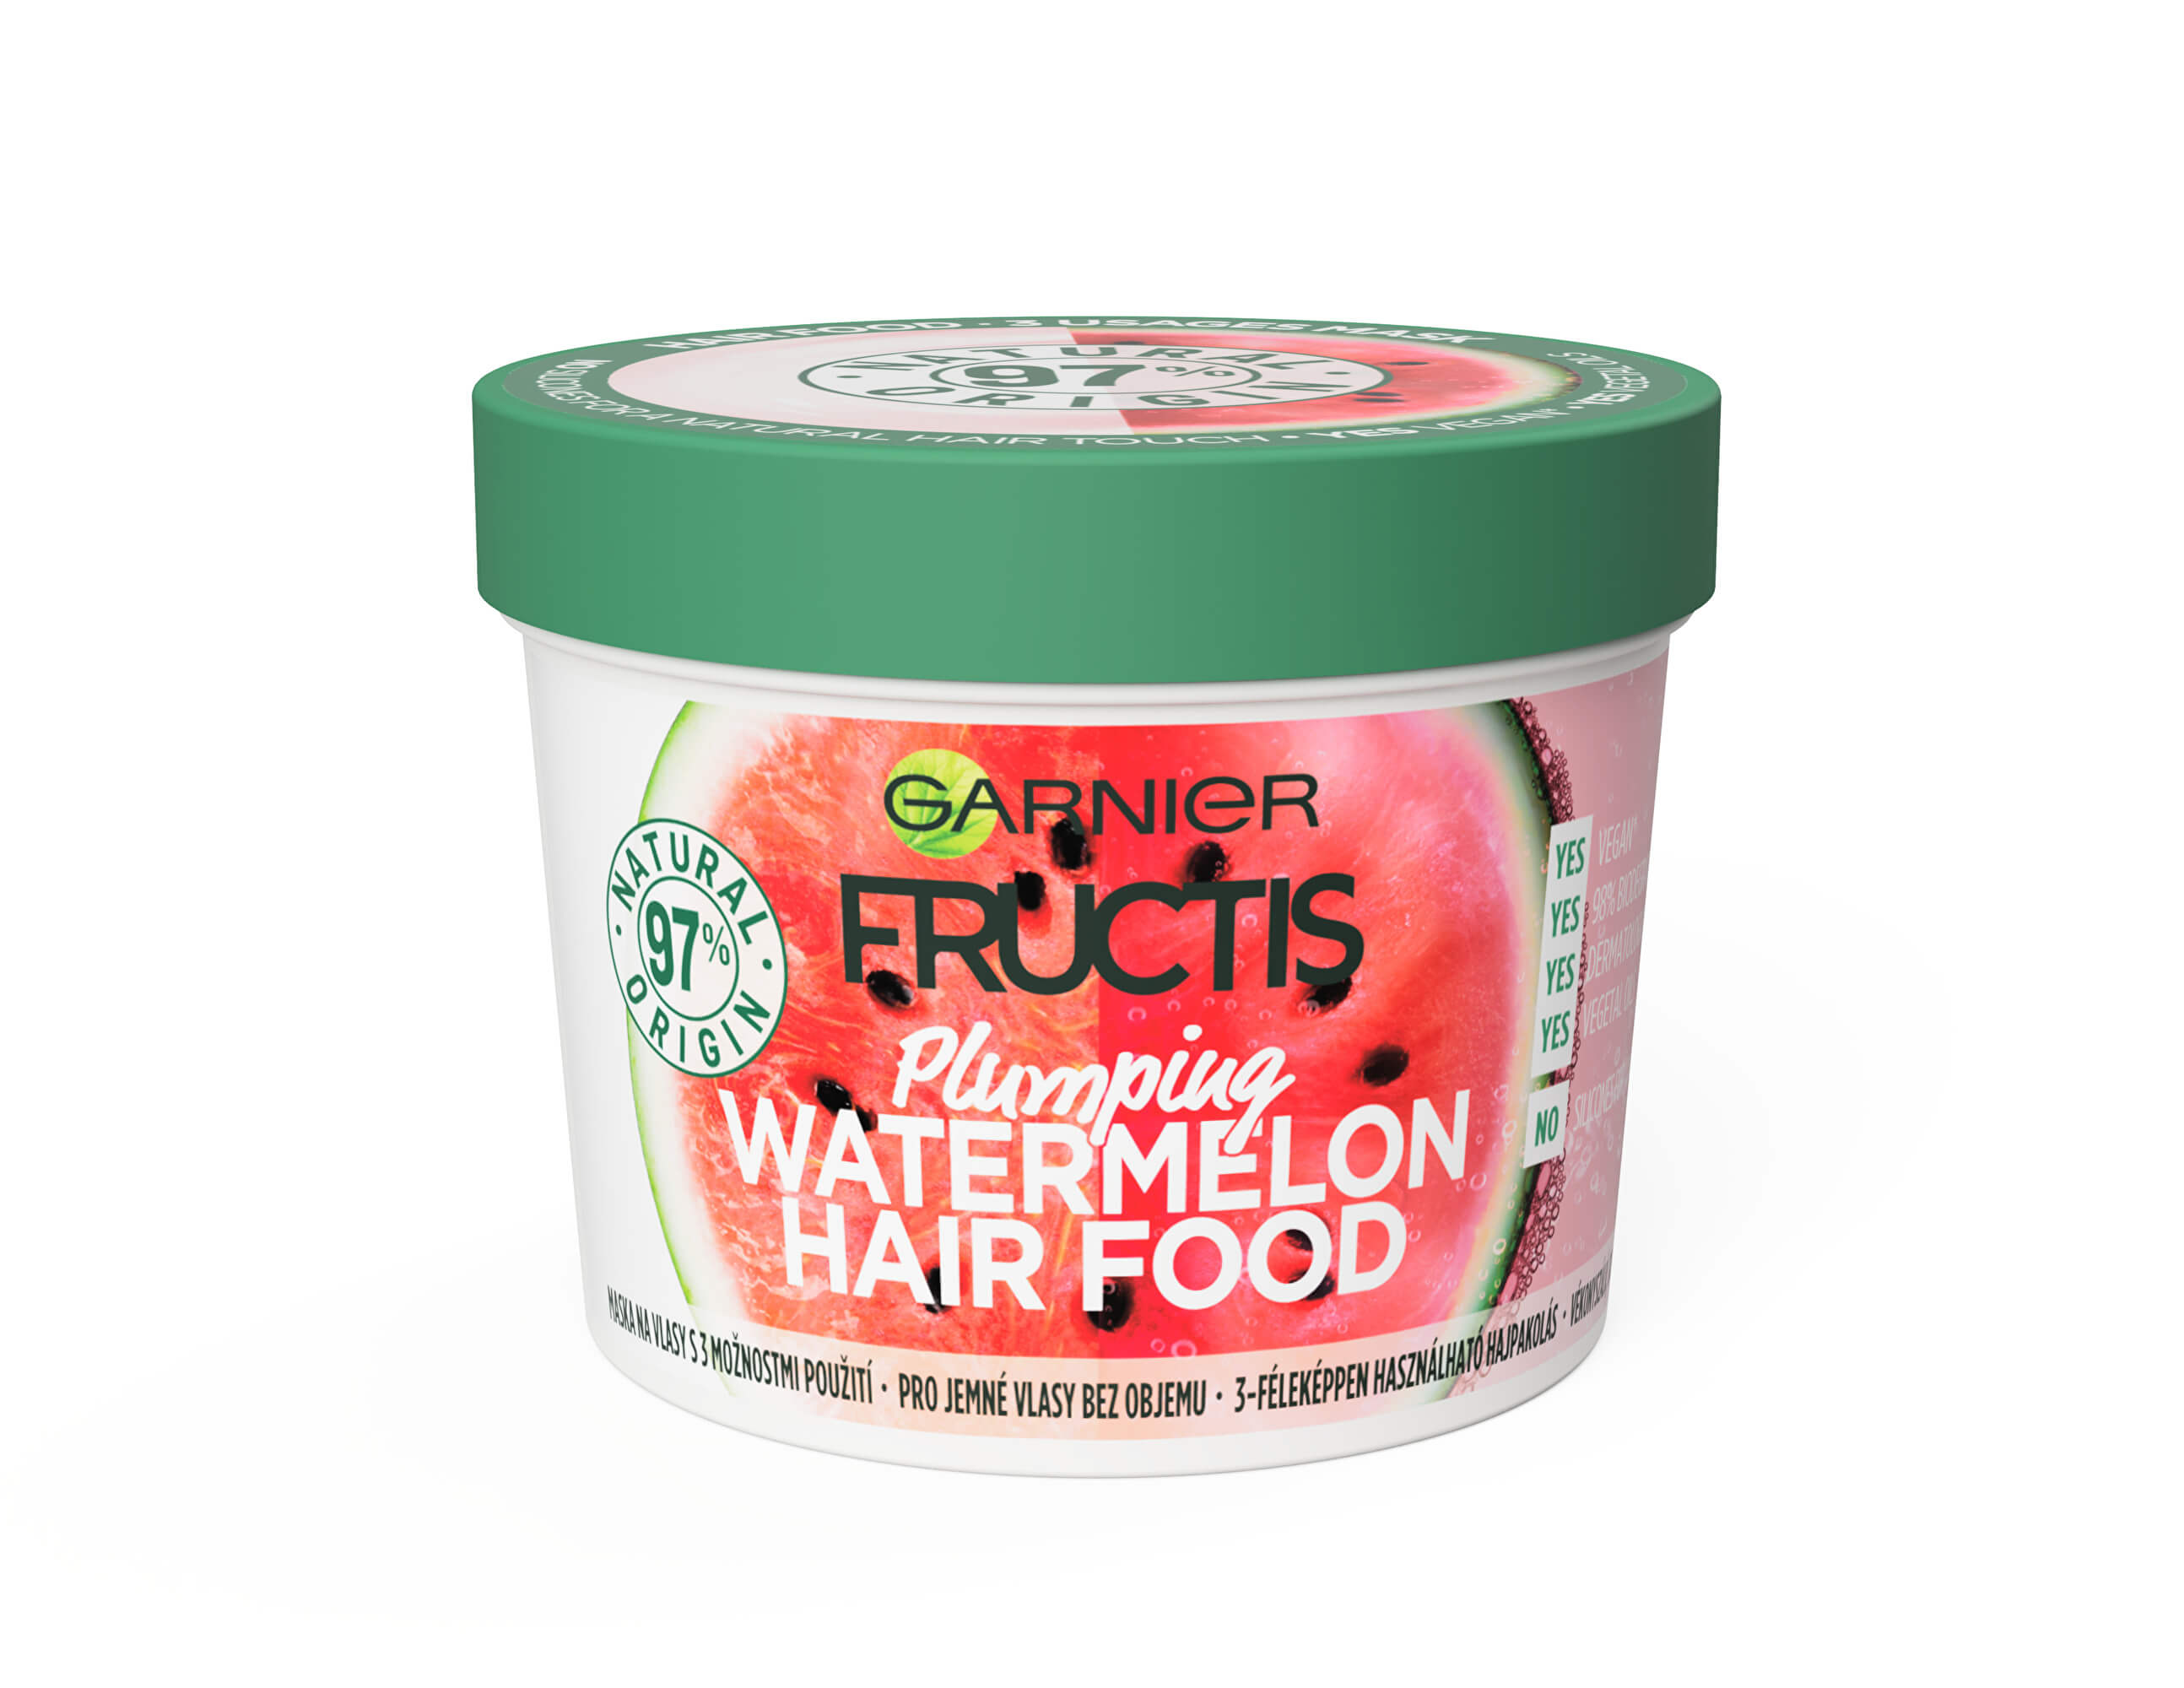 Garnier Fructis Watermelon Hair Food maska pre jemné vlasy bez objemu 390ml